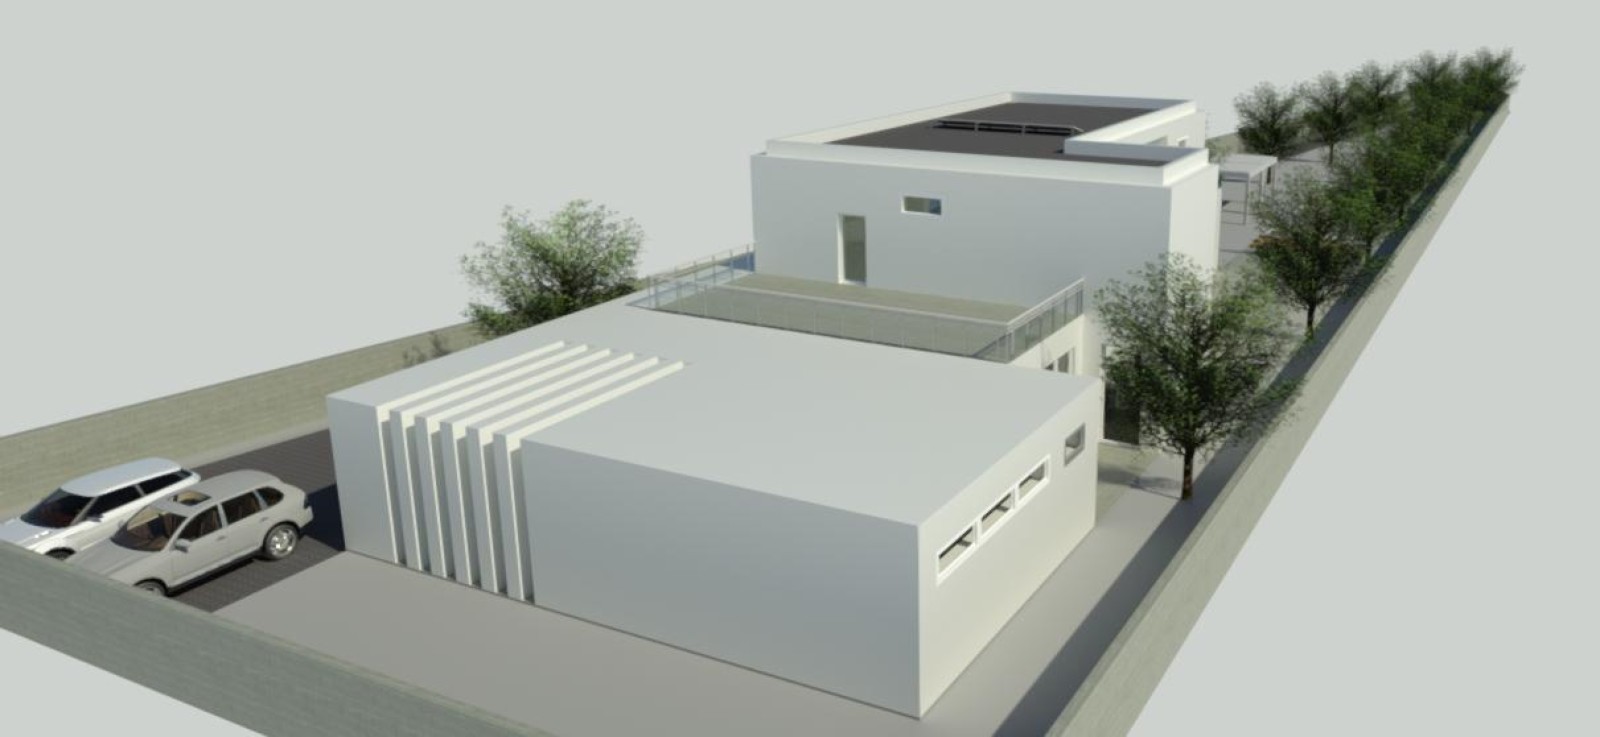 Neues Haus mit 5 Schlafzimmern, zu verkaufen, in ruhiger Lage, Águeda, Portugal_247943